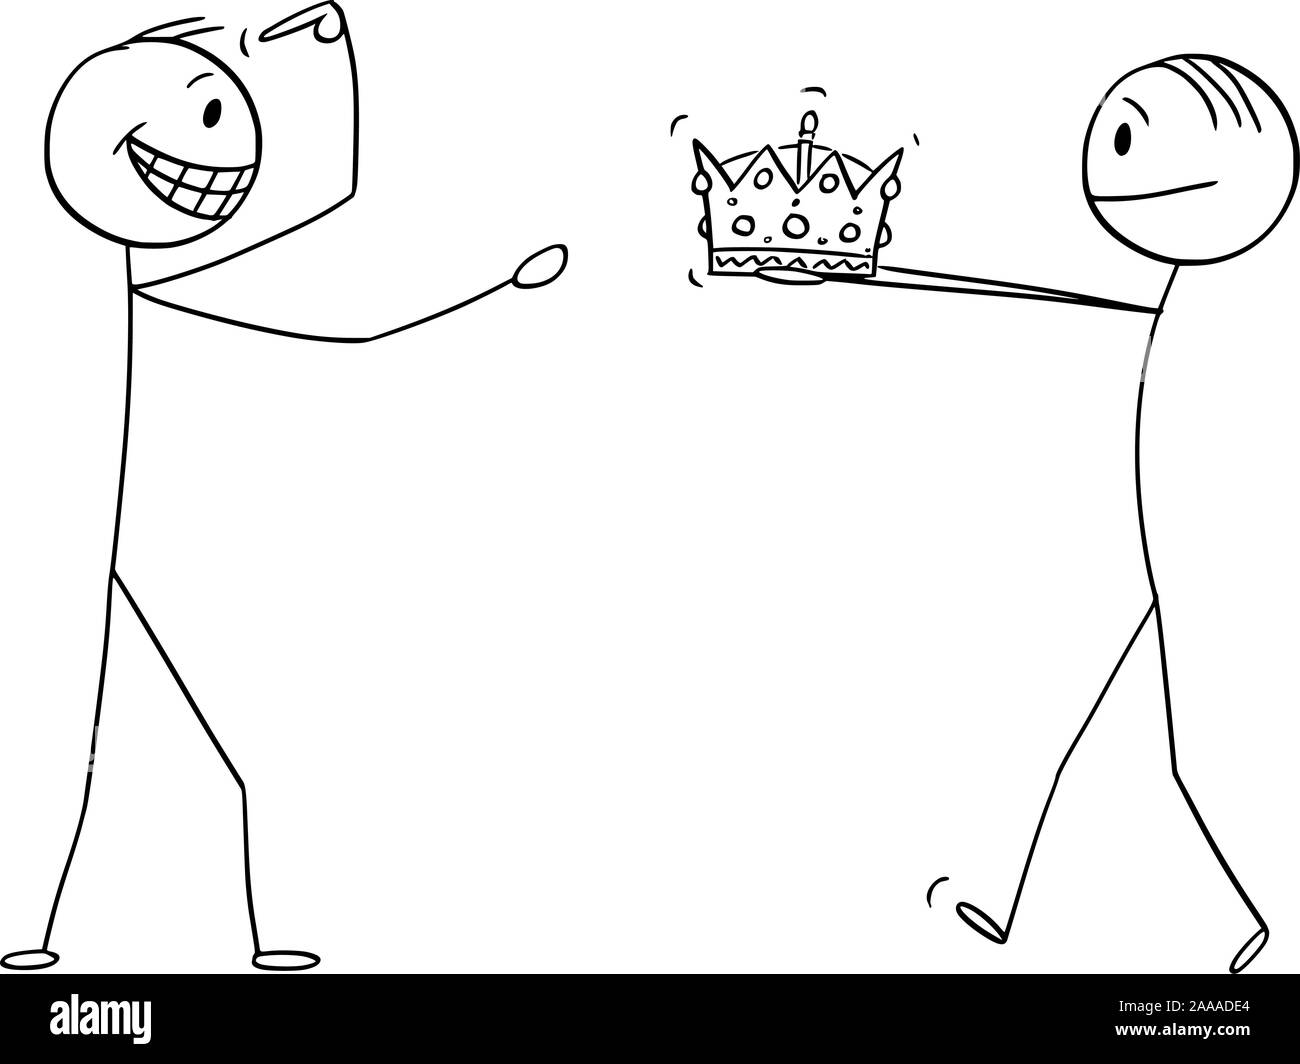 Cartoon vectores stick figura dibujo Ilustración conceptual del hombre, dando a la corona de rey o reino a hombre que confía durante la coronación o la ceremonia de coronación. Ilustración del Vector